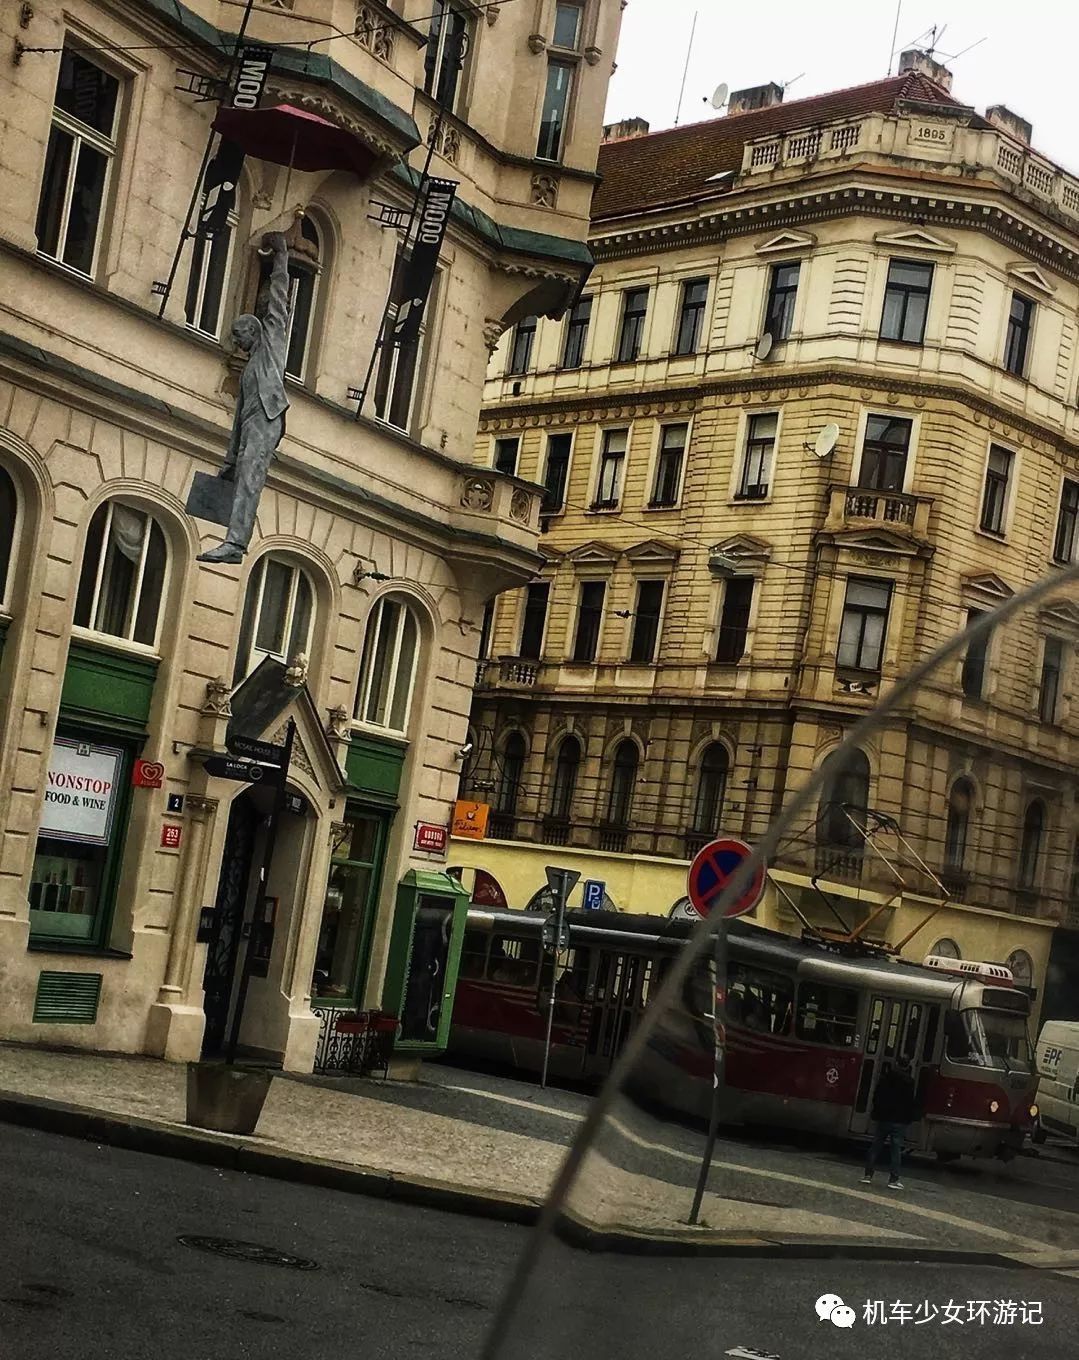 摩旅欧洲:来到欧洲最美的城市,布拉格!